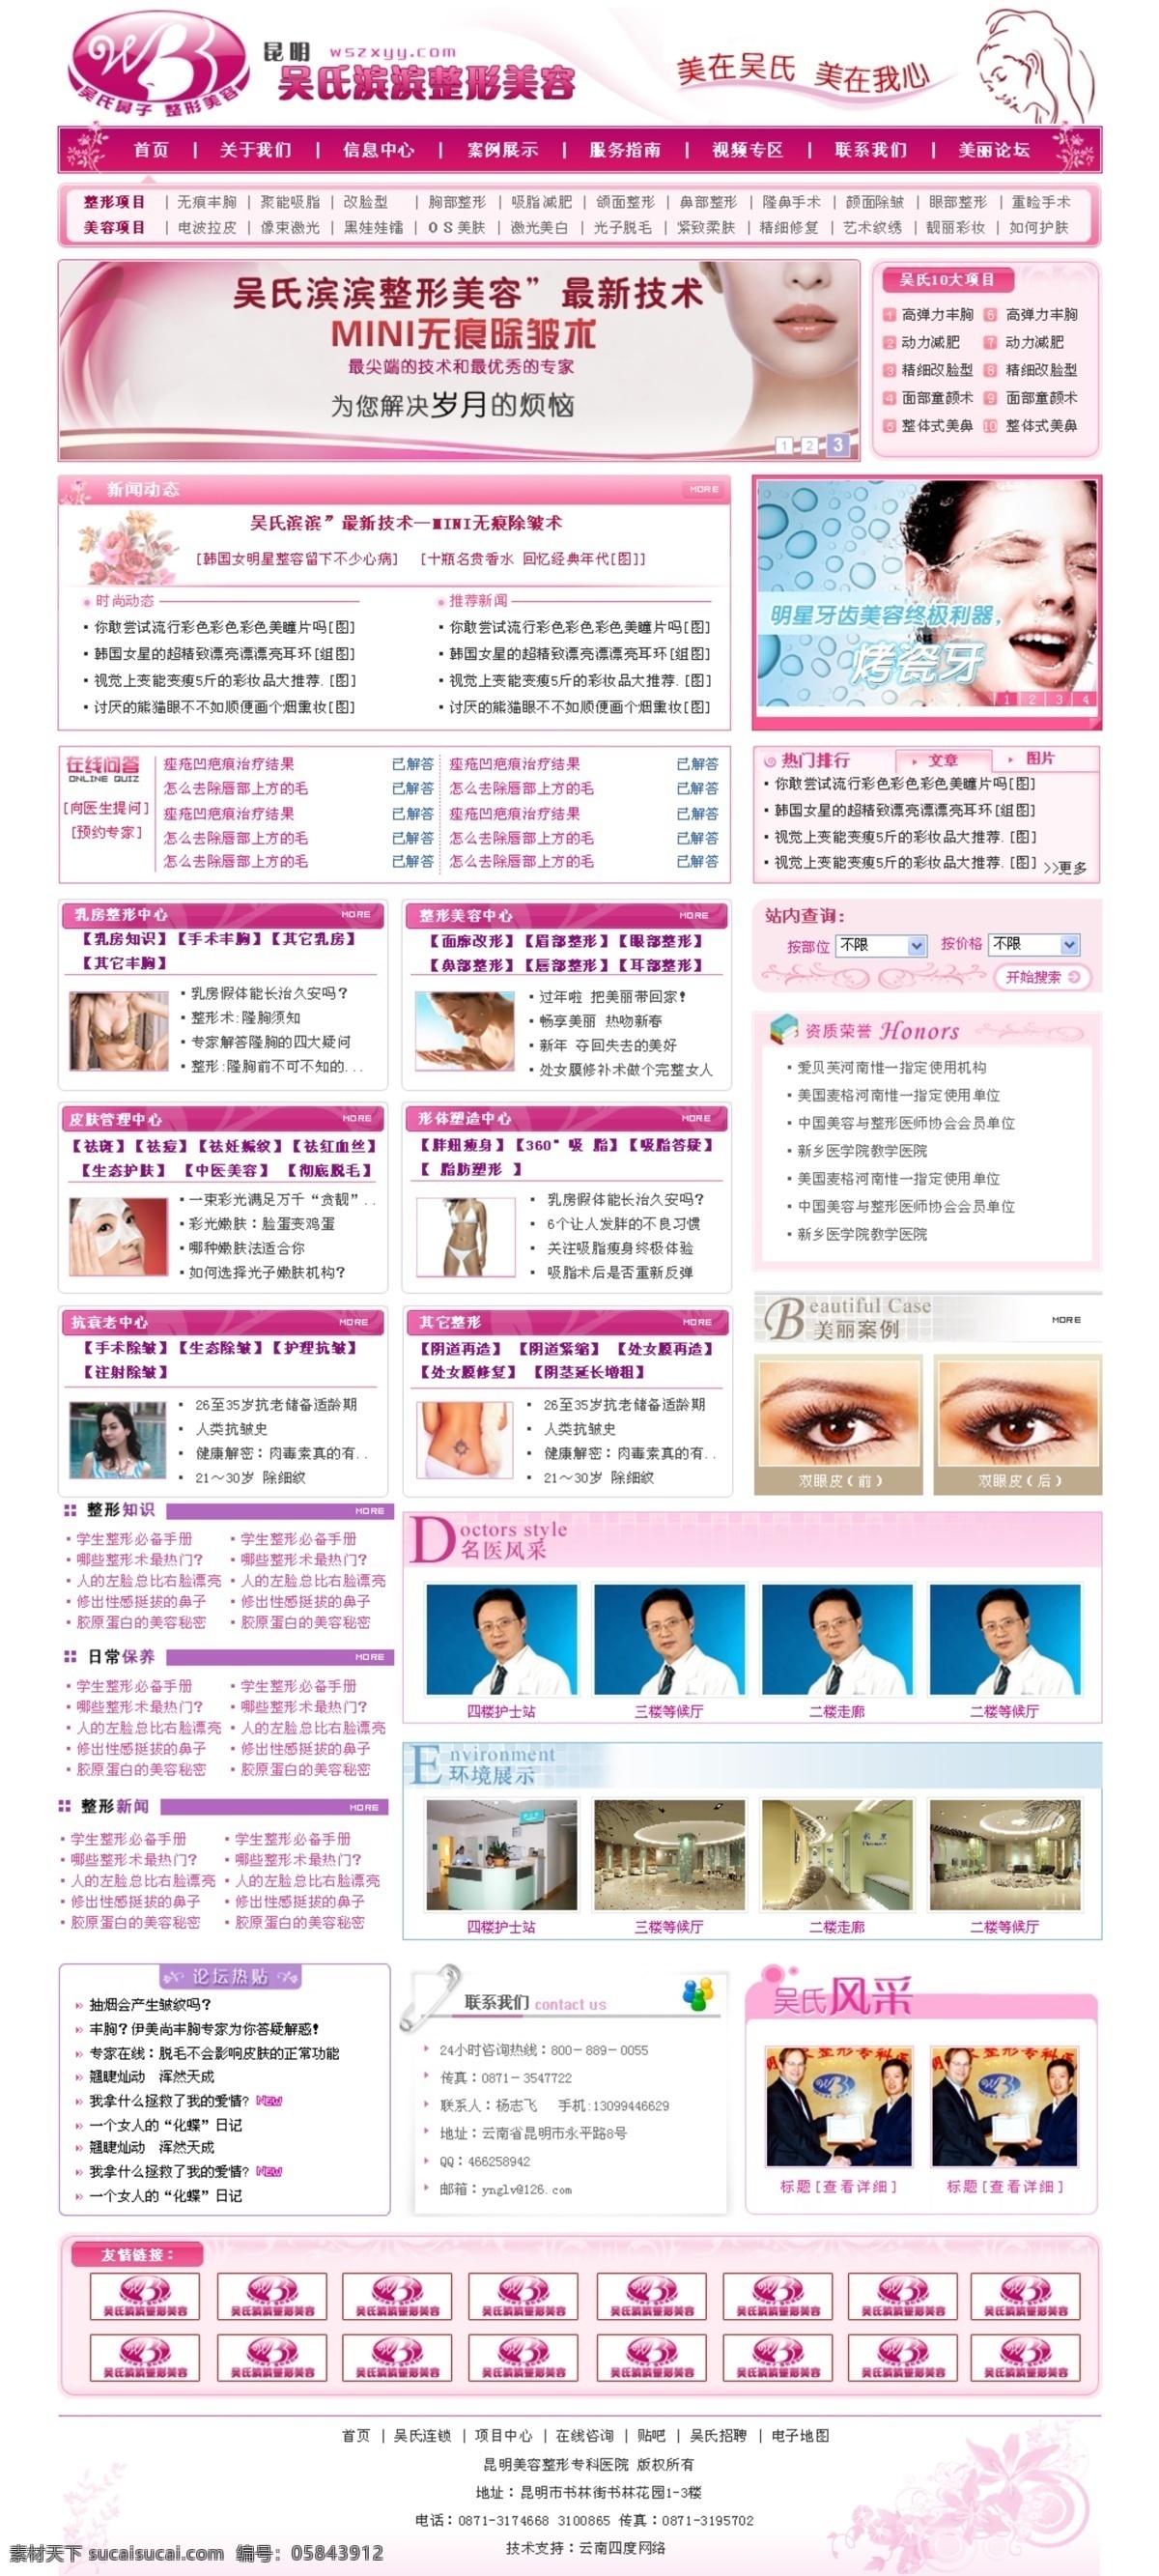 粉红色 整形美容 网页模板 粉 美容 模板 网页 整形 红色整形美容 网页素材